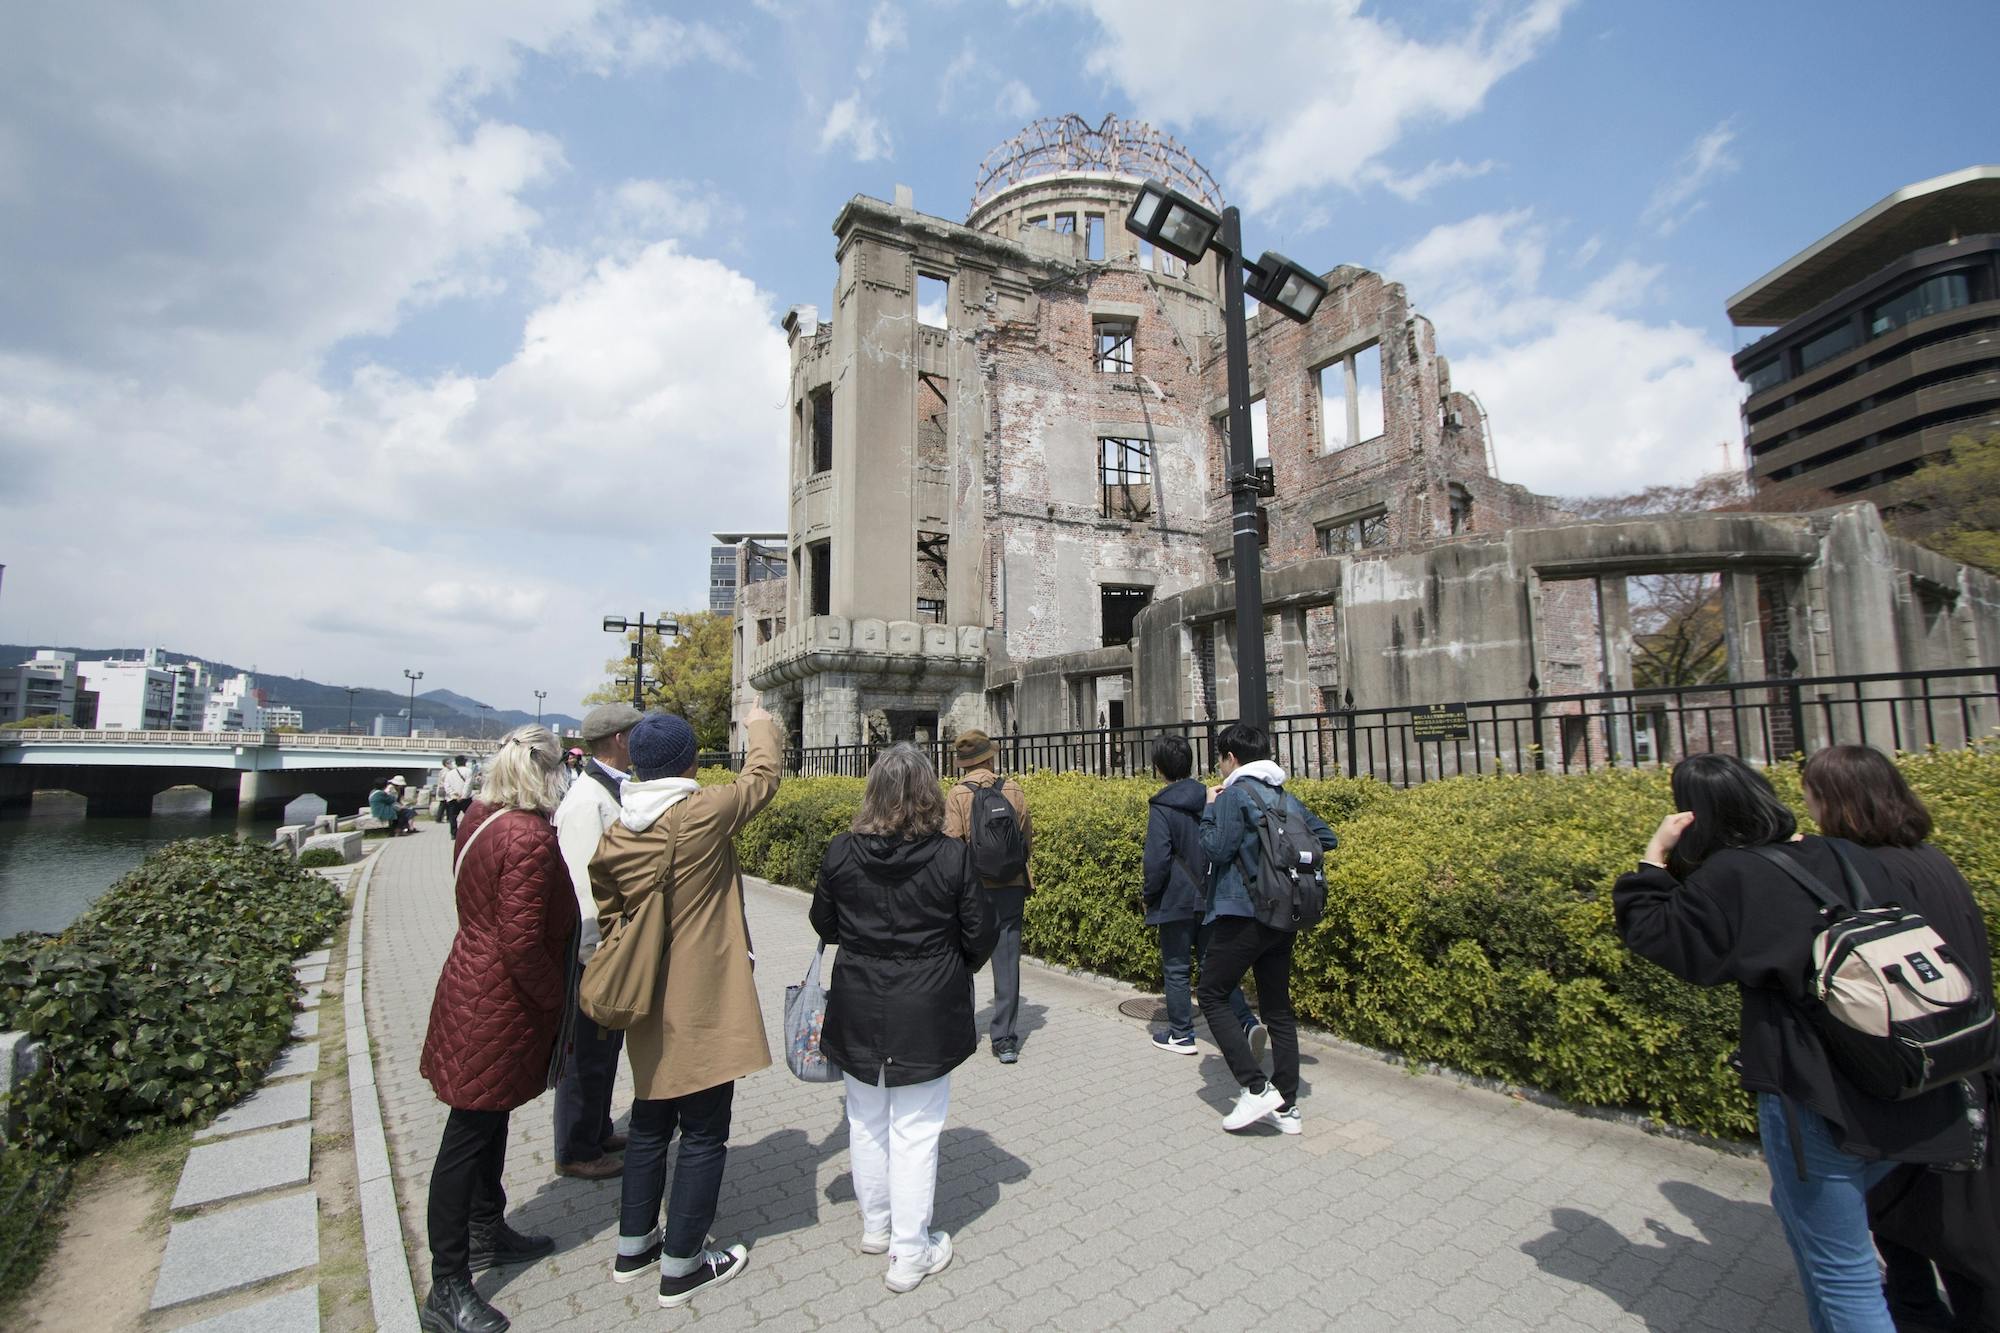 Rundgang zum Friedensdenkmal (Heiwa) in Hiroshima und zu den Weltkulturerbestätten